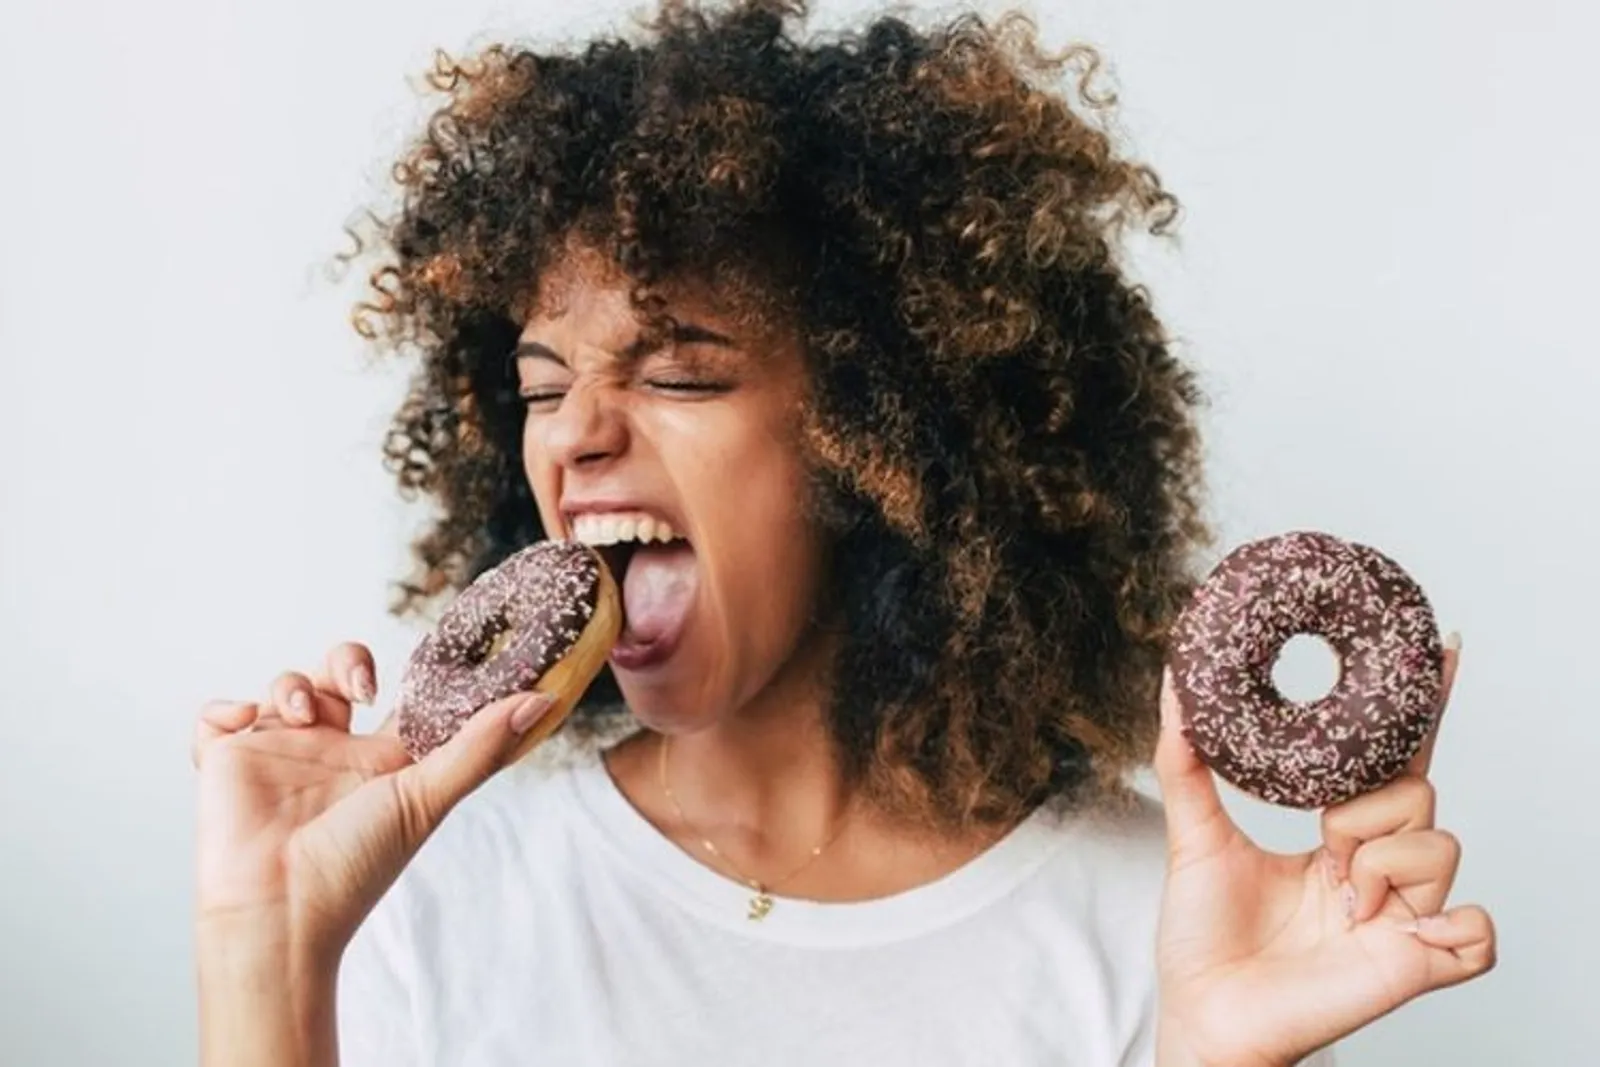 Gula dan 5 Hal Lain yang Bikin Tubuh Cepat Gemuk